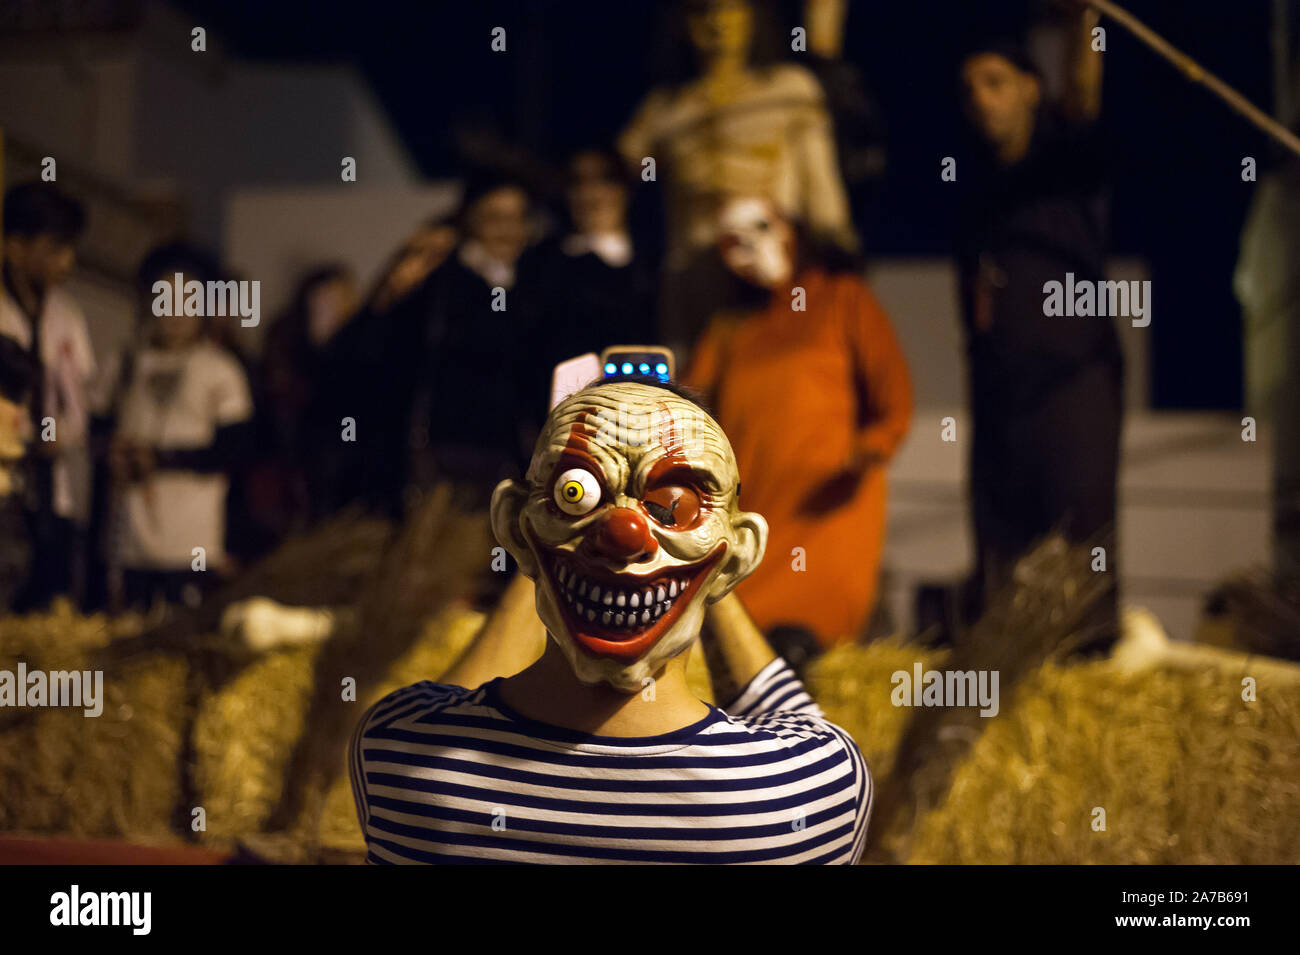 Malaga, Spanien. 31 Okt, 2019. Ein Mann mit einem teuflischen Maske gekleidet nimmt eine selfie während der VI Ausgabe von ''Churriana Noche del Terror'' (churriana Horror Night) zu feiern, die der Halloween Nacht in der Nachbarschaft von Churriana. Wohnsitz in Churriana beteiligen sich an der Halloween Tag mit schrecklichen Kostüme gekleidet, ihre Häuser zu verzieren und mit unheimlichen Leistungen entlang der Straßen. Die 'Churriana Horror Night' ist eine der beliebtesten Veranstaltungen in der Stadt markiert die Halloween Tag, und bei dieser Gelegenheit das Thema der Ausgabe ist die Hexen. (Bild: © Jesus Merida/SOPA Bilder Stockfoto